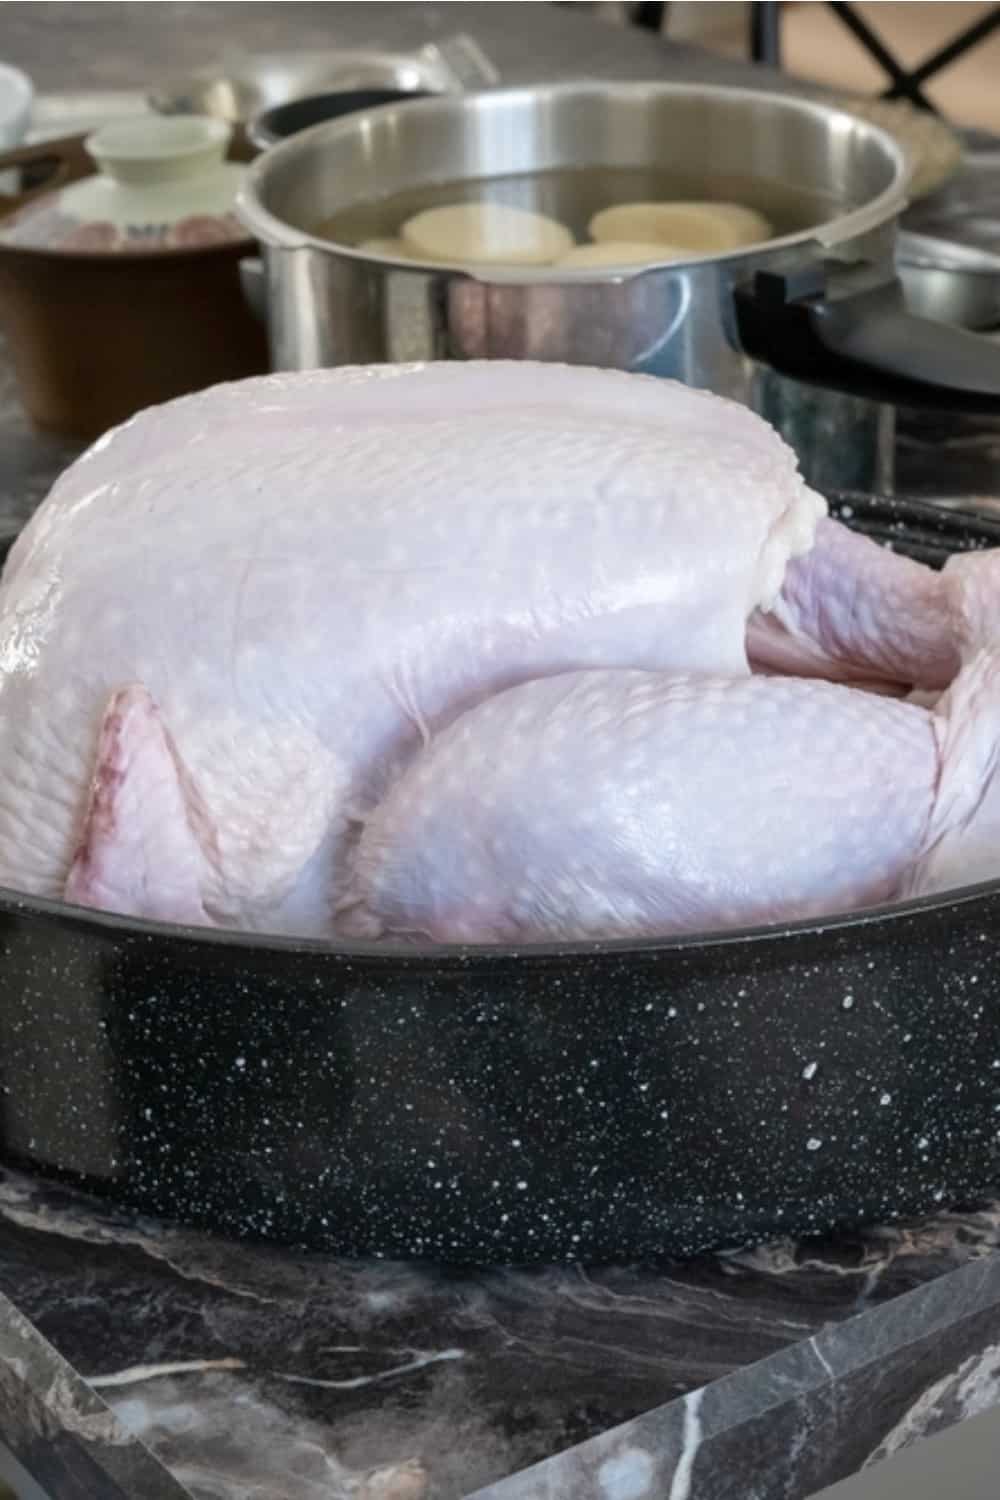 turkey on countertop